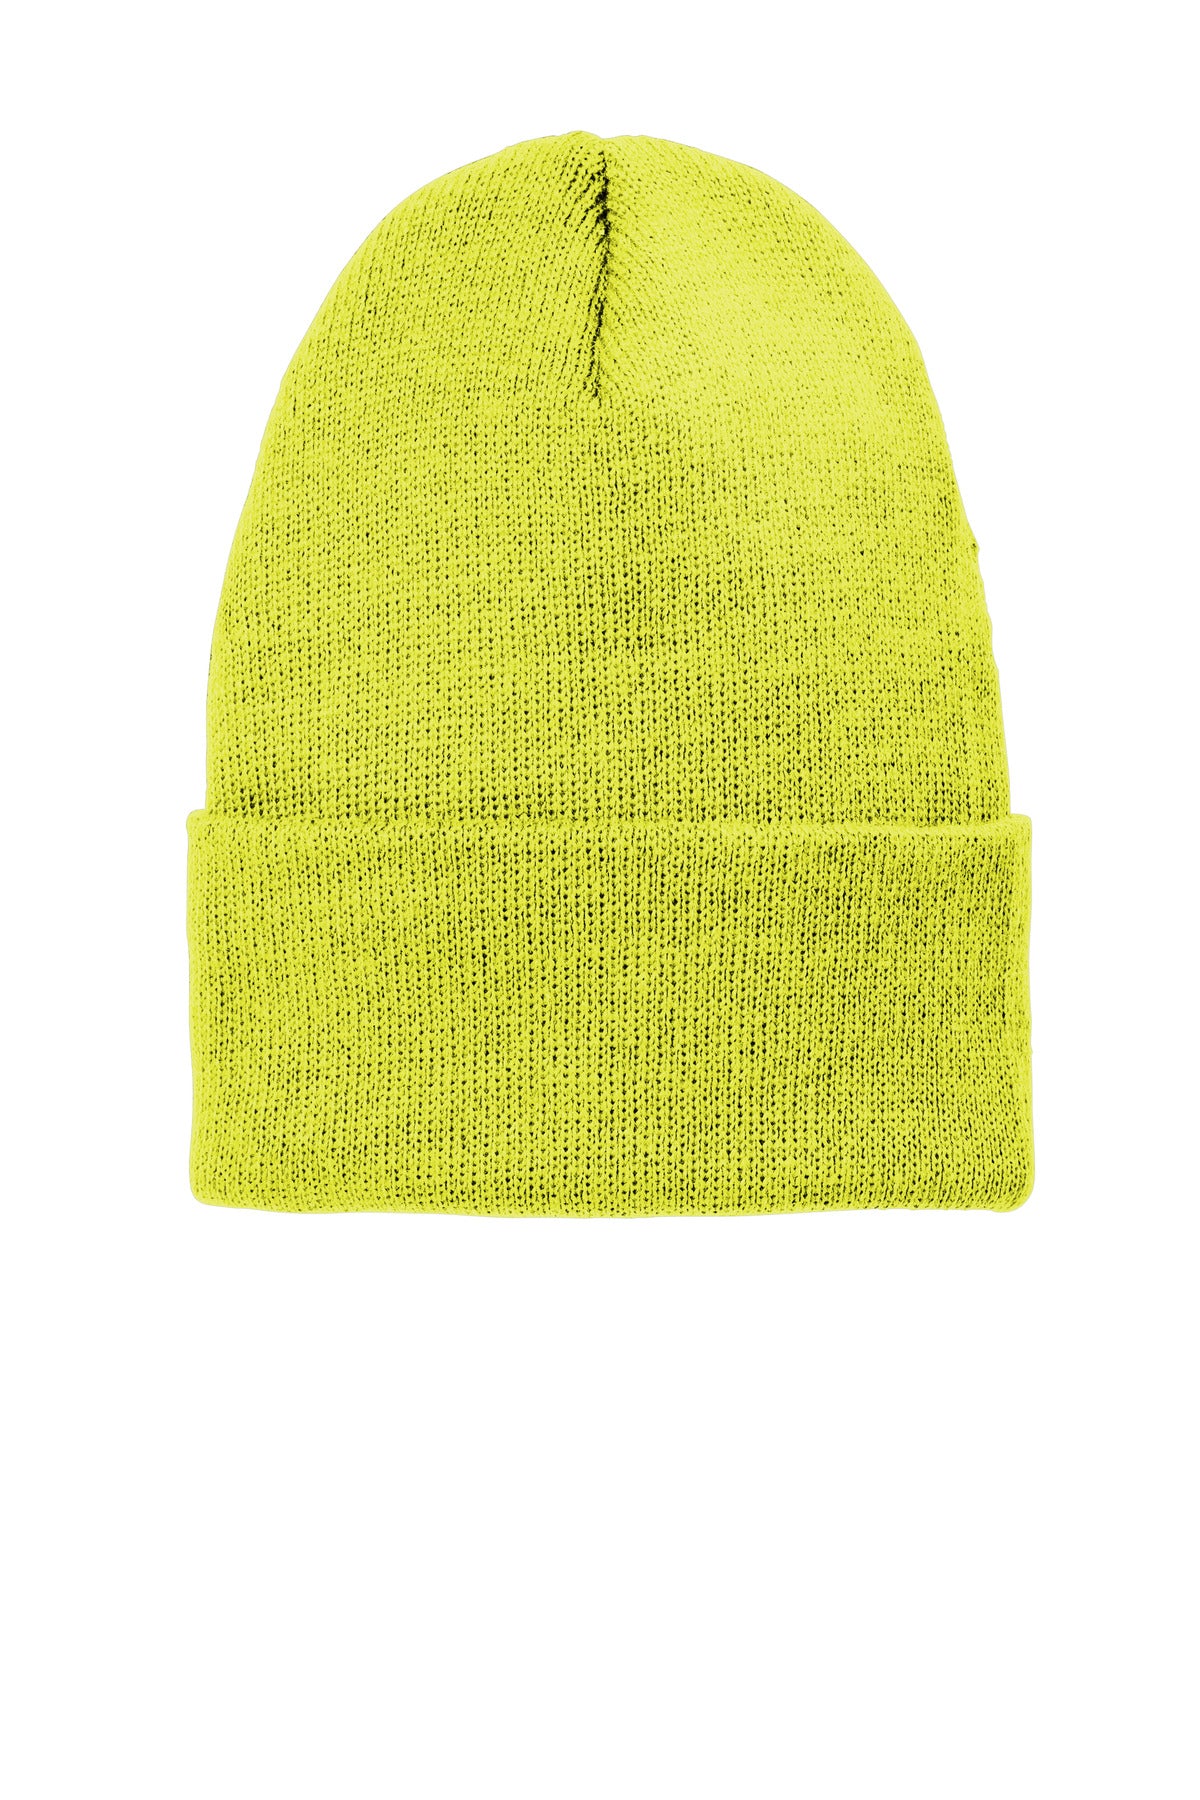 Caps Neon Yellow OSFA Volunteer Knitwear